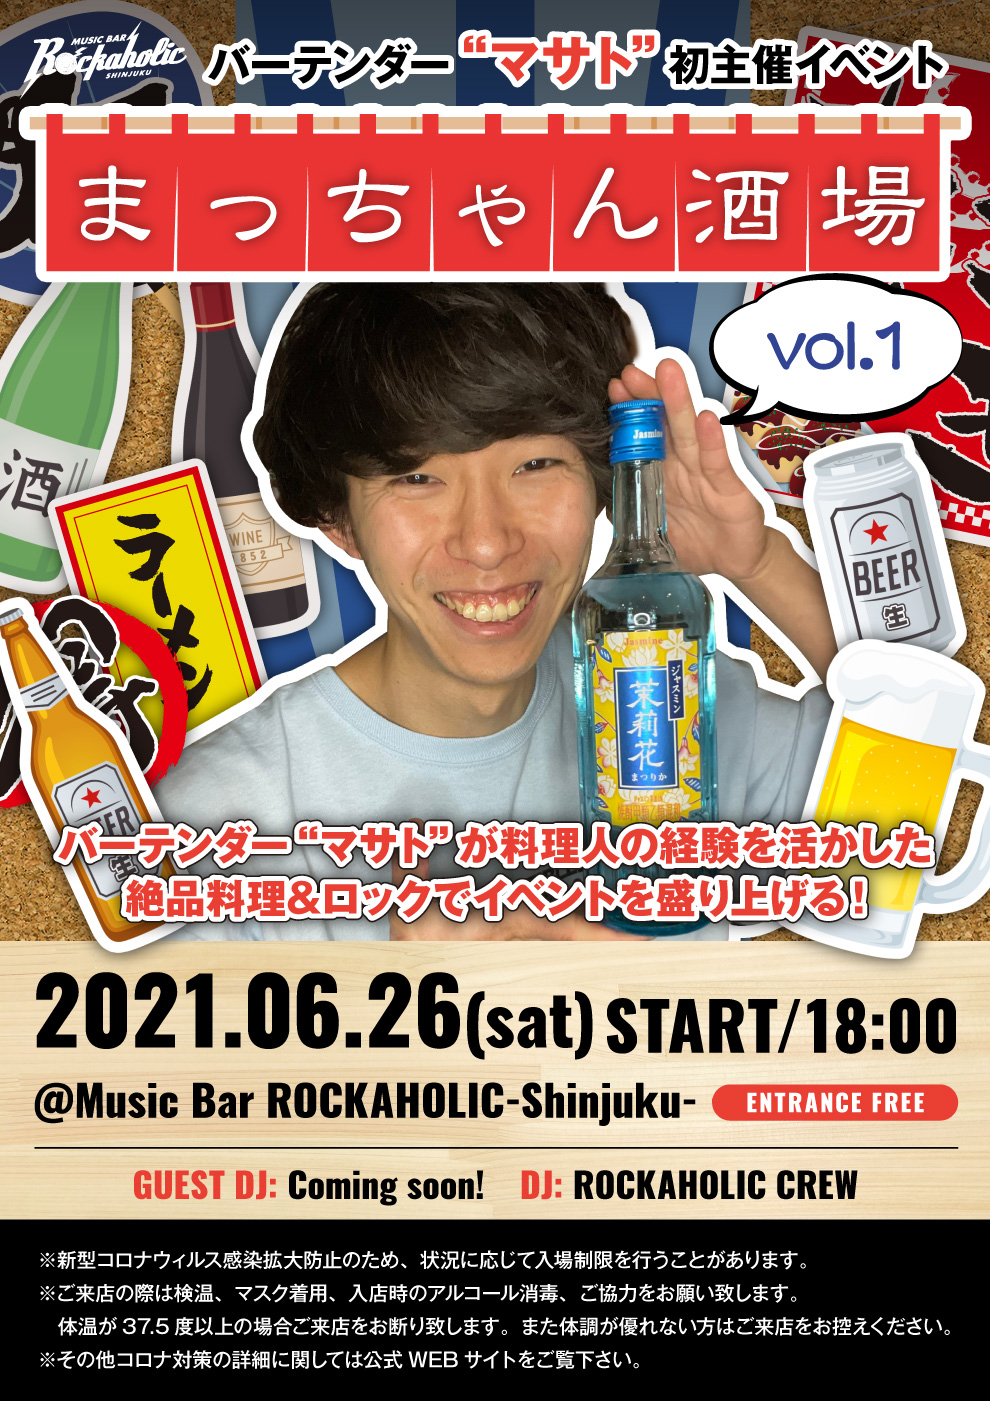 https://bar-rockaholic.jp/shibuya/blog/B55C0311-6172-4D8B-9C43-8ECA96280F05.jpeg